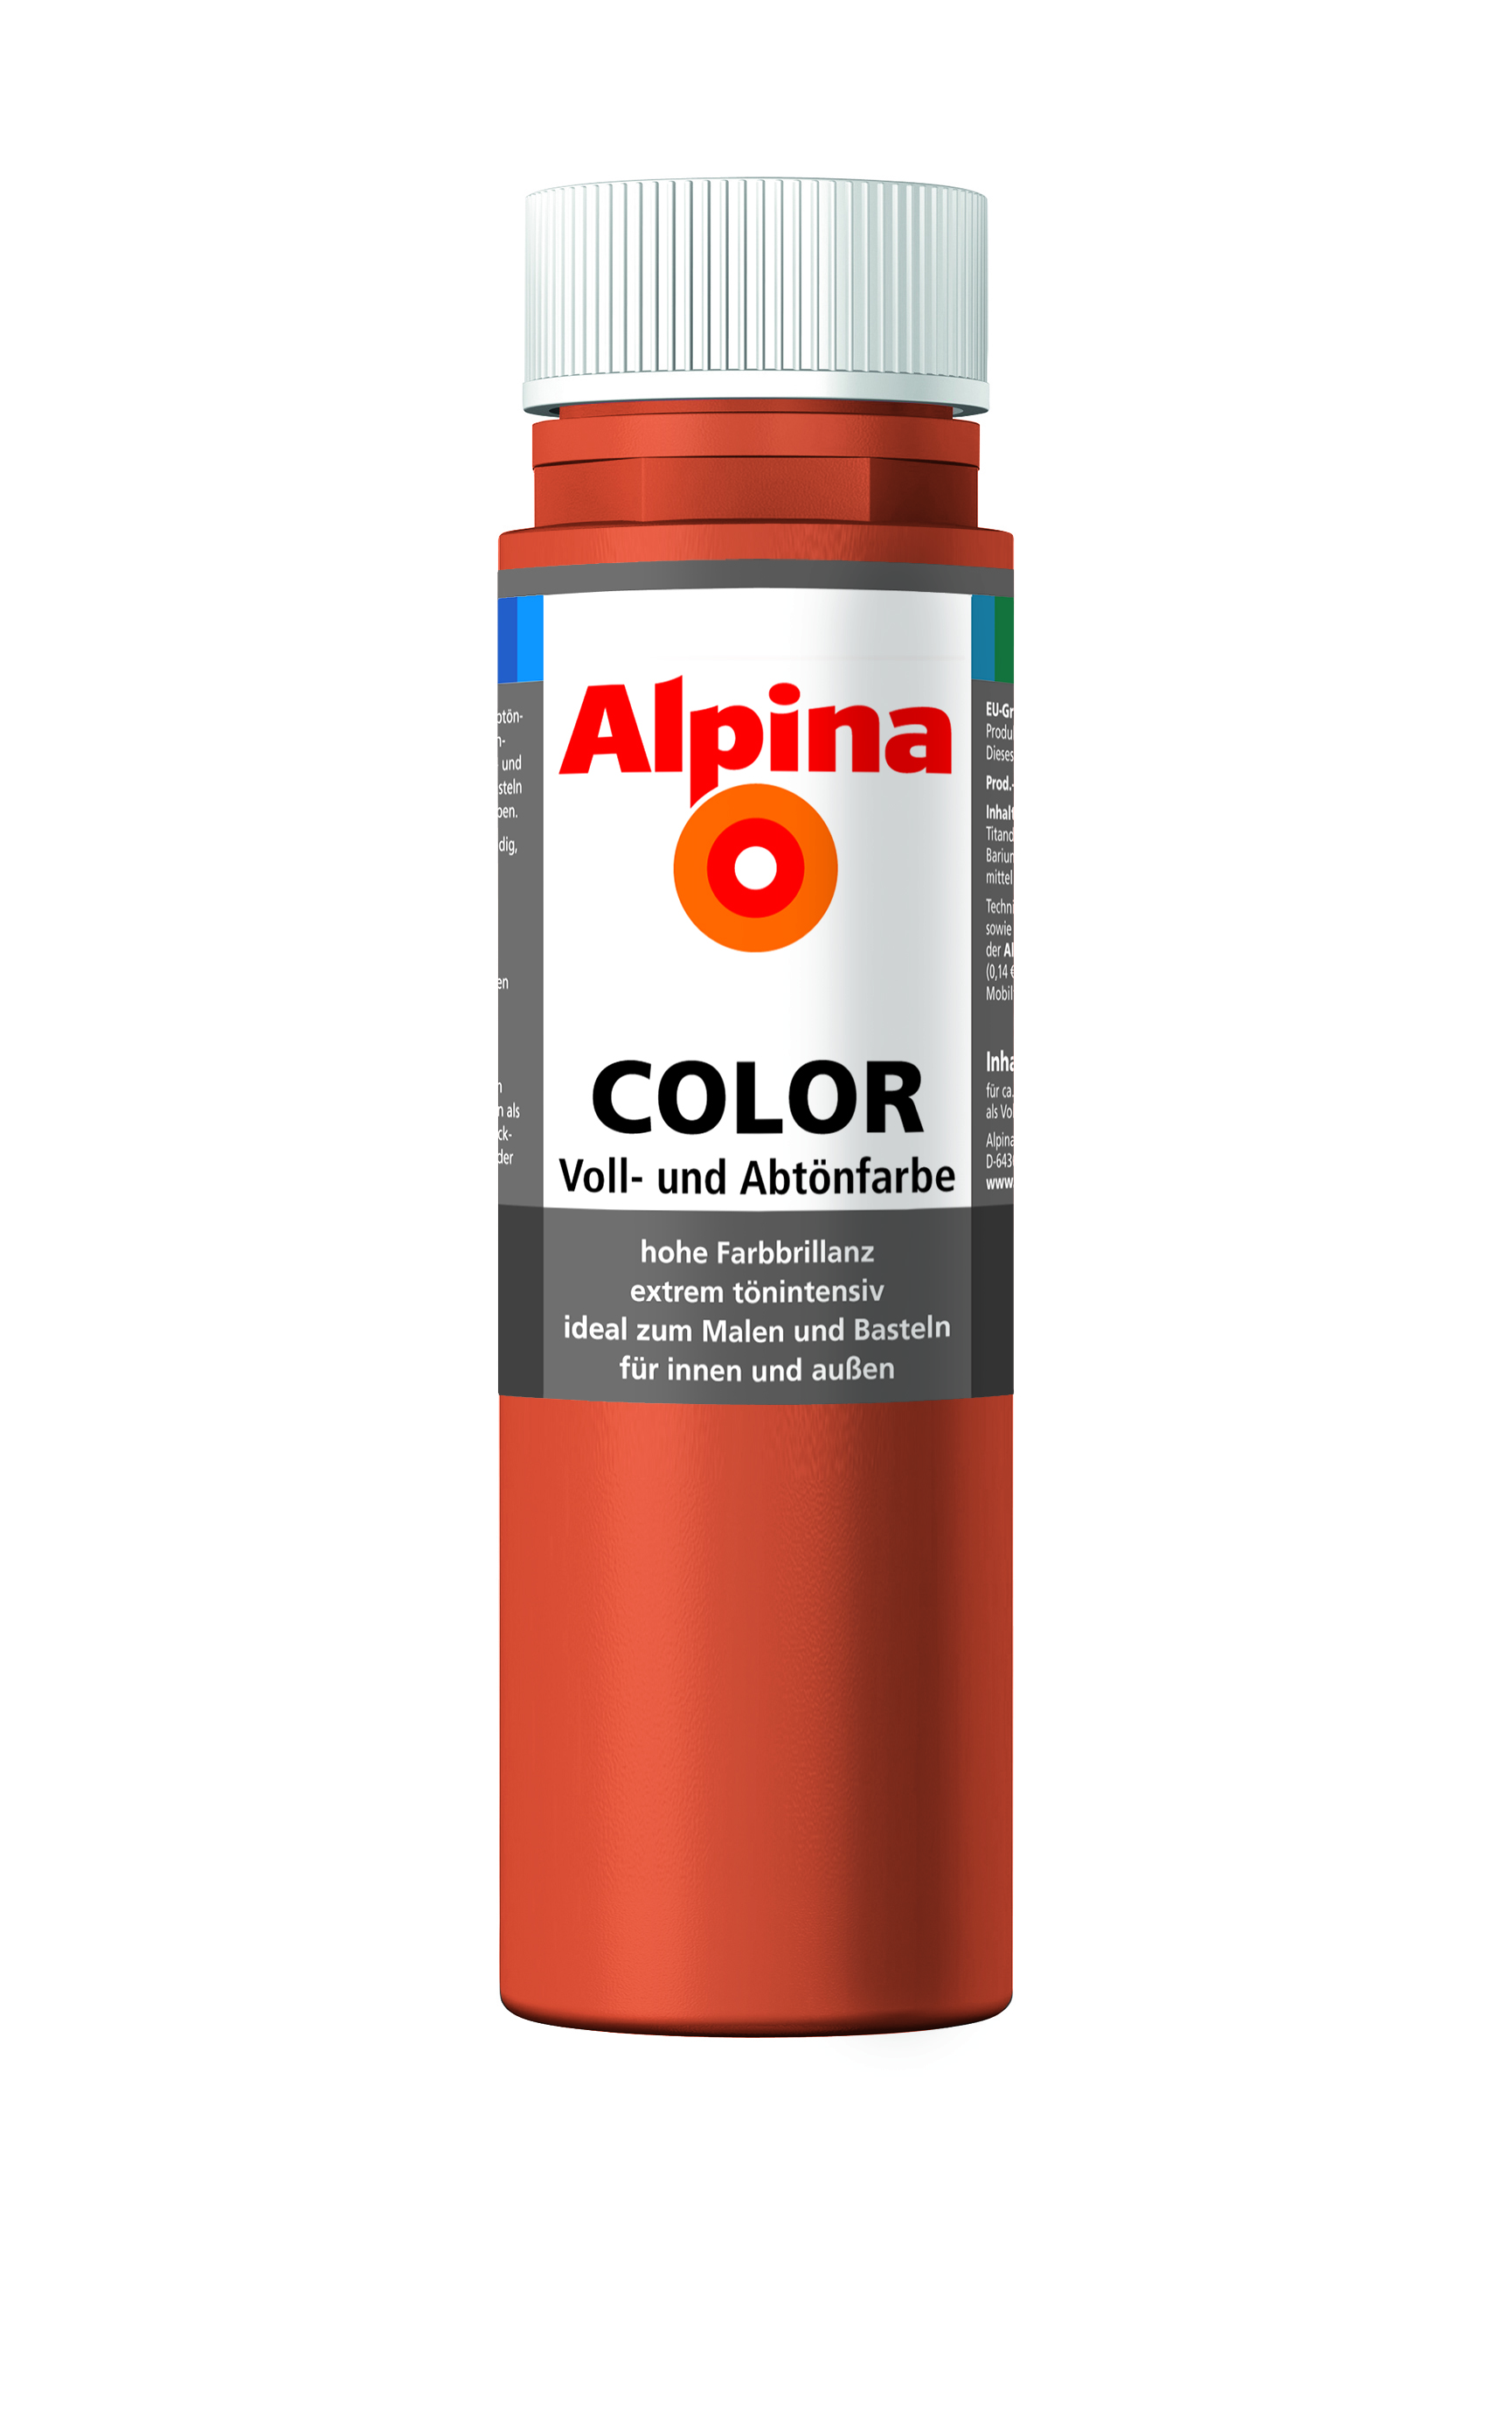 Alpina Color Voll- und Abtönfarbe Italian Red, 250ml